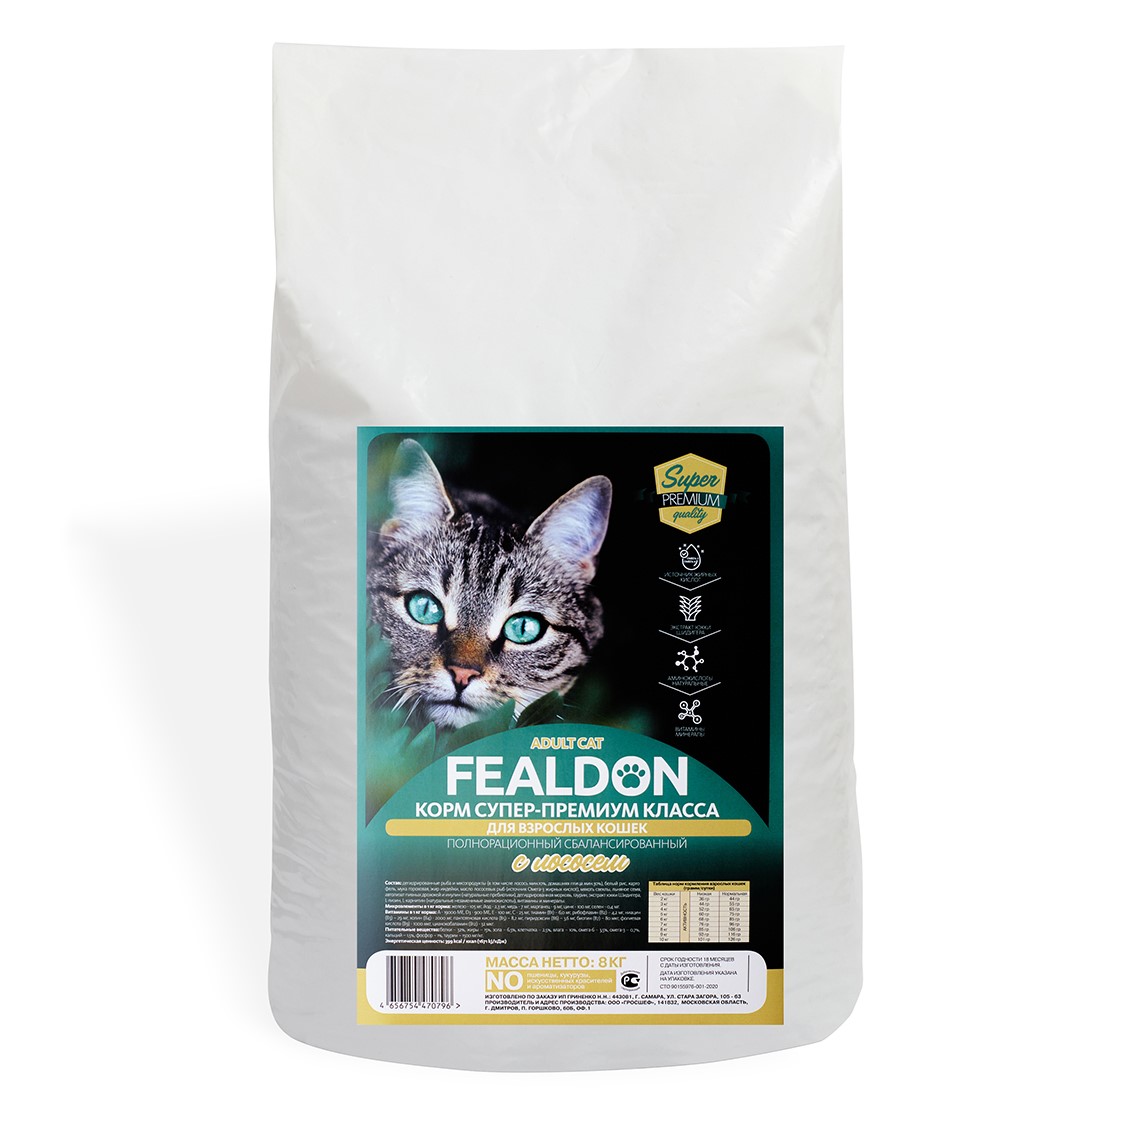 Сухой корм для кошек Fealdon Adult Cat, с лососем, 8 кг